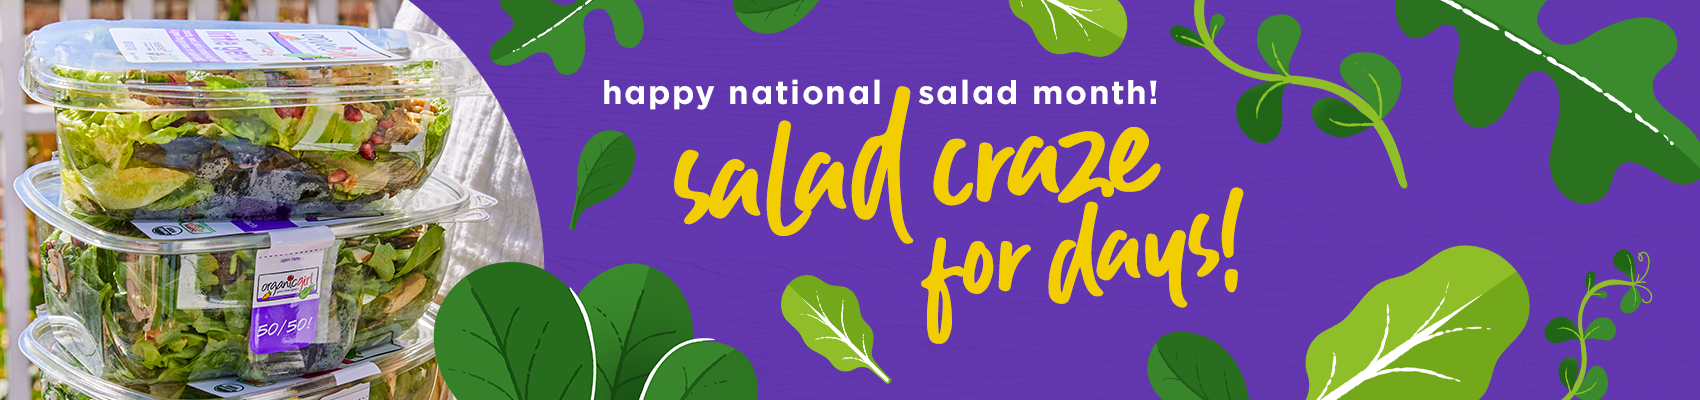 happy national salad month! salad craze for days!